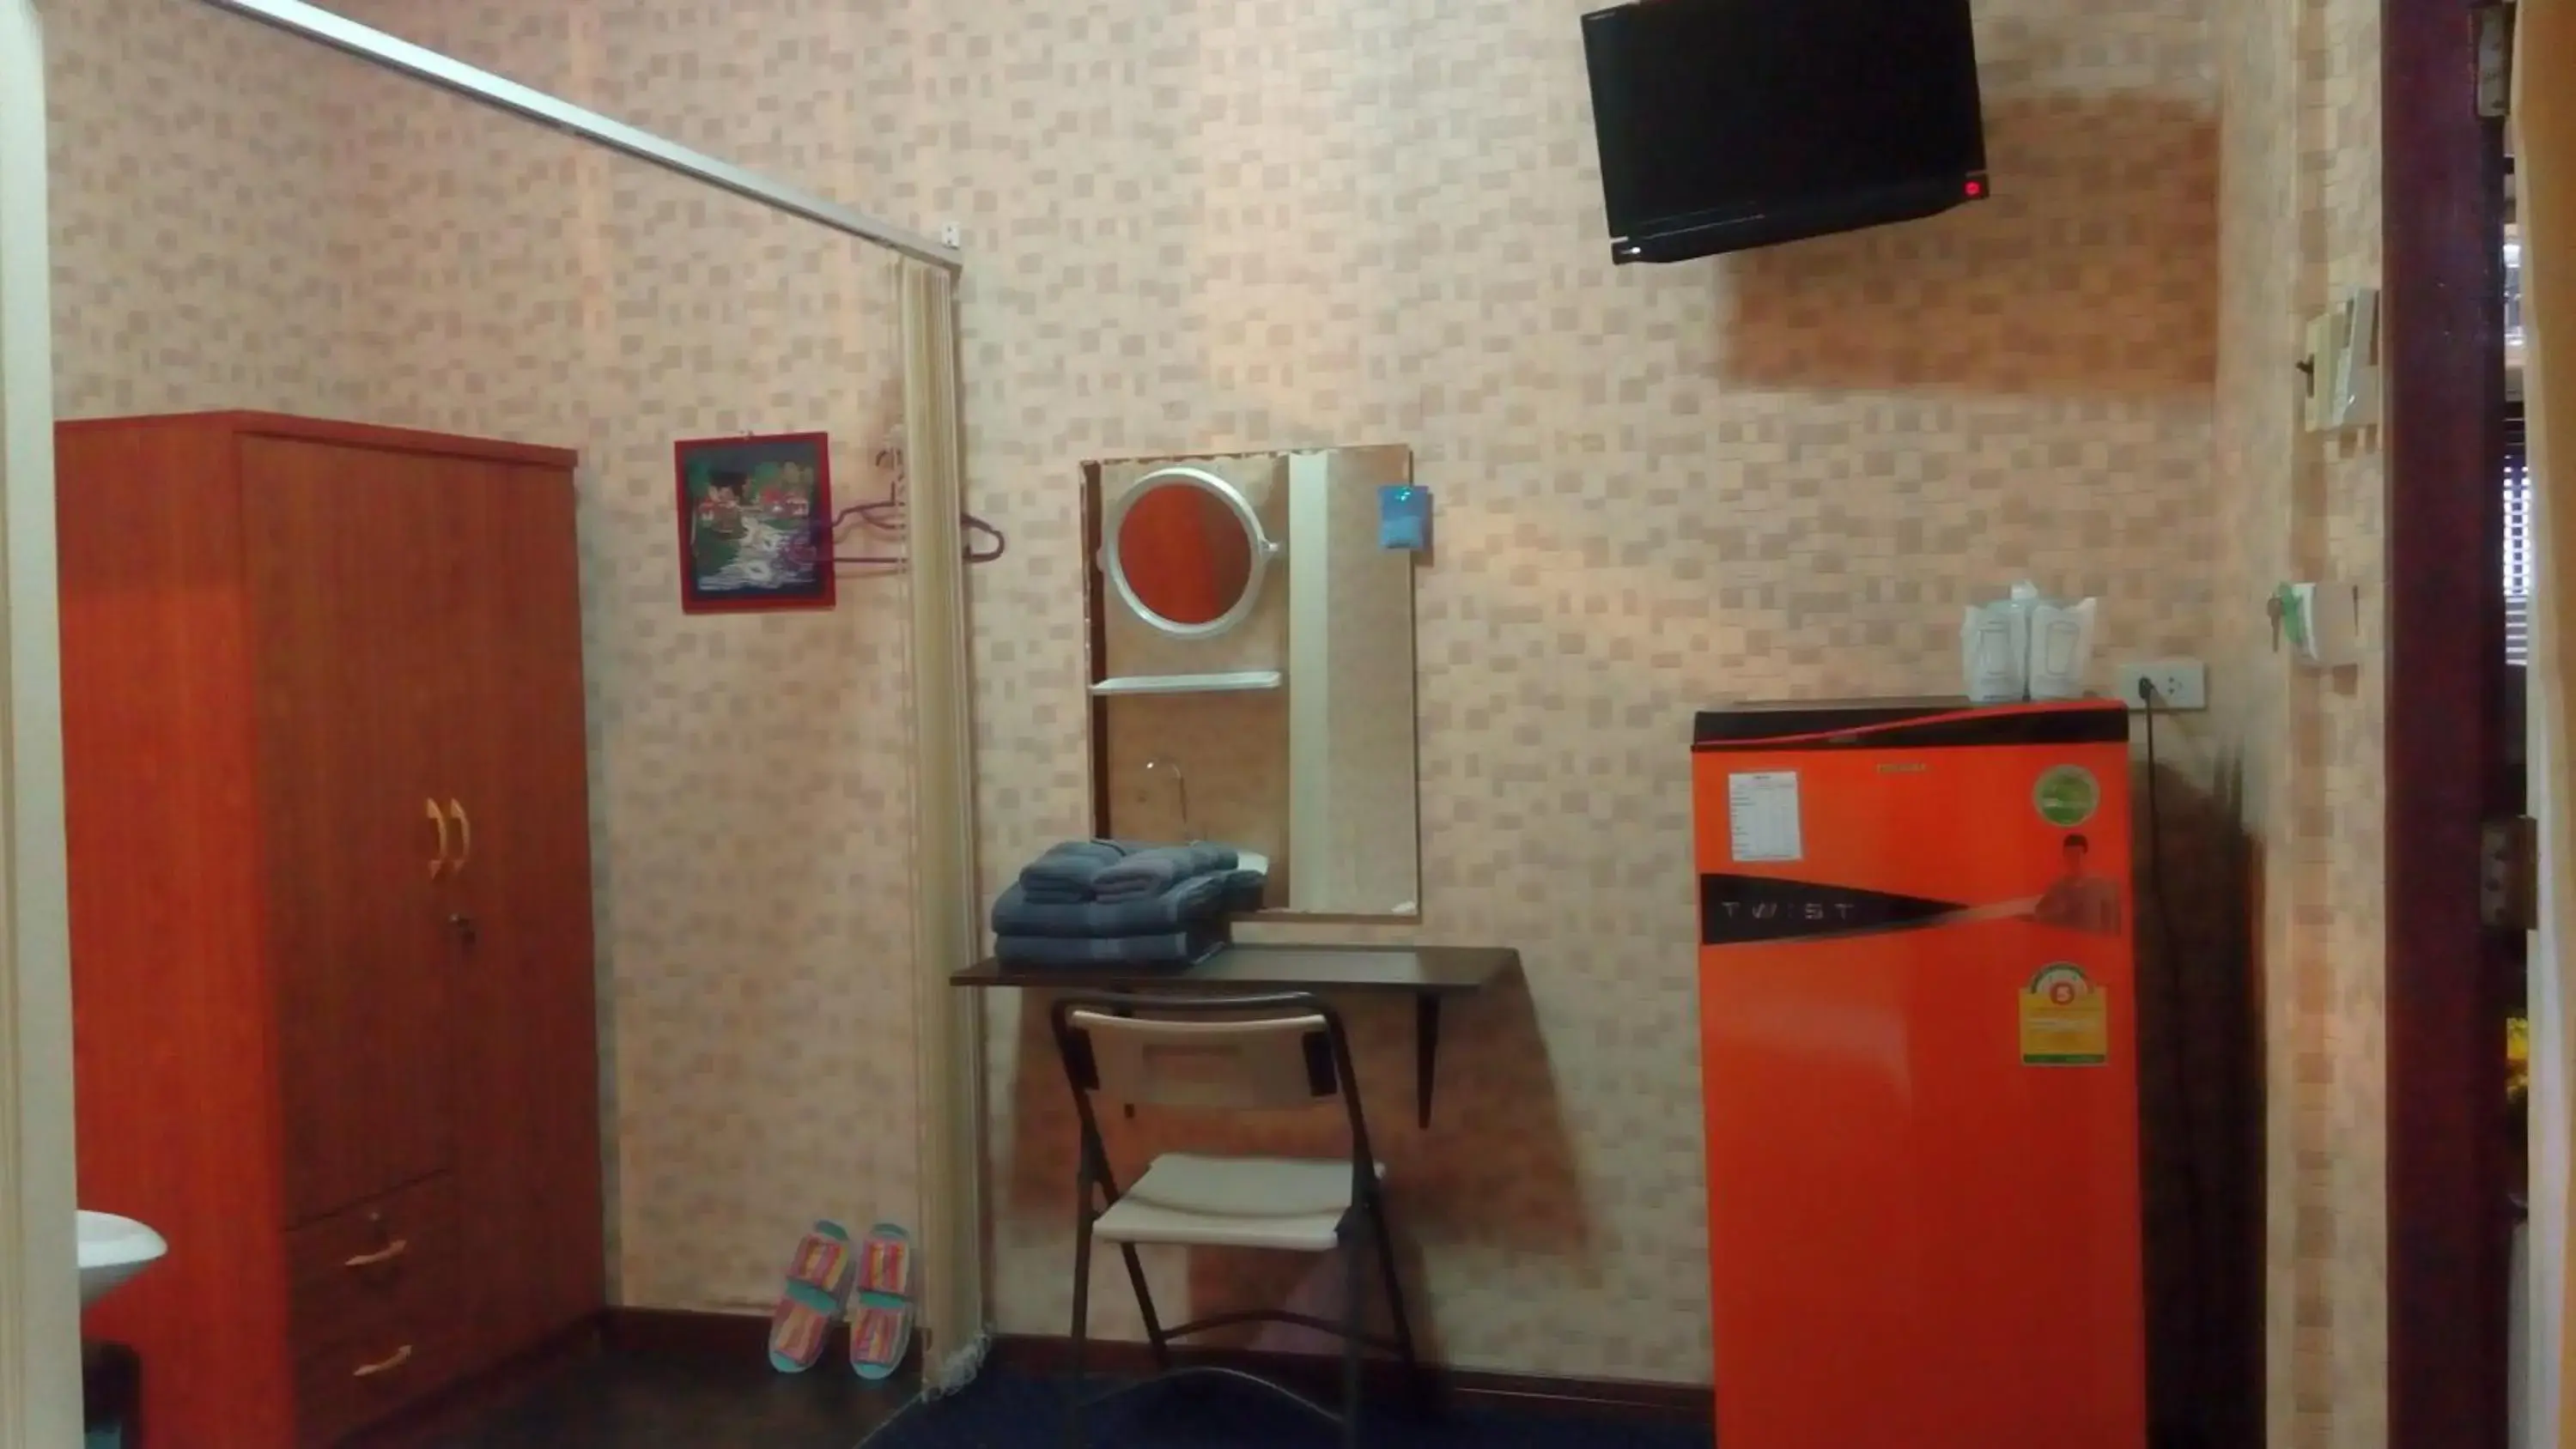 Toilet, TV/Entertainment Center in Decor Do Hostel